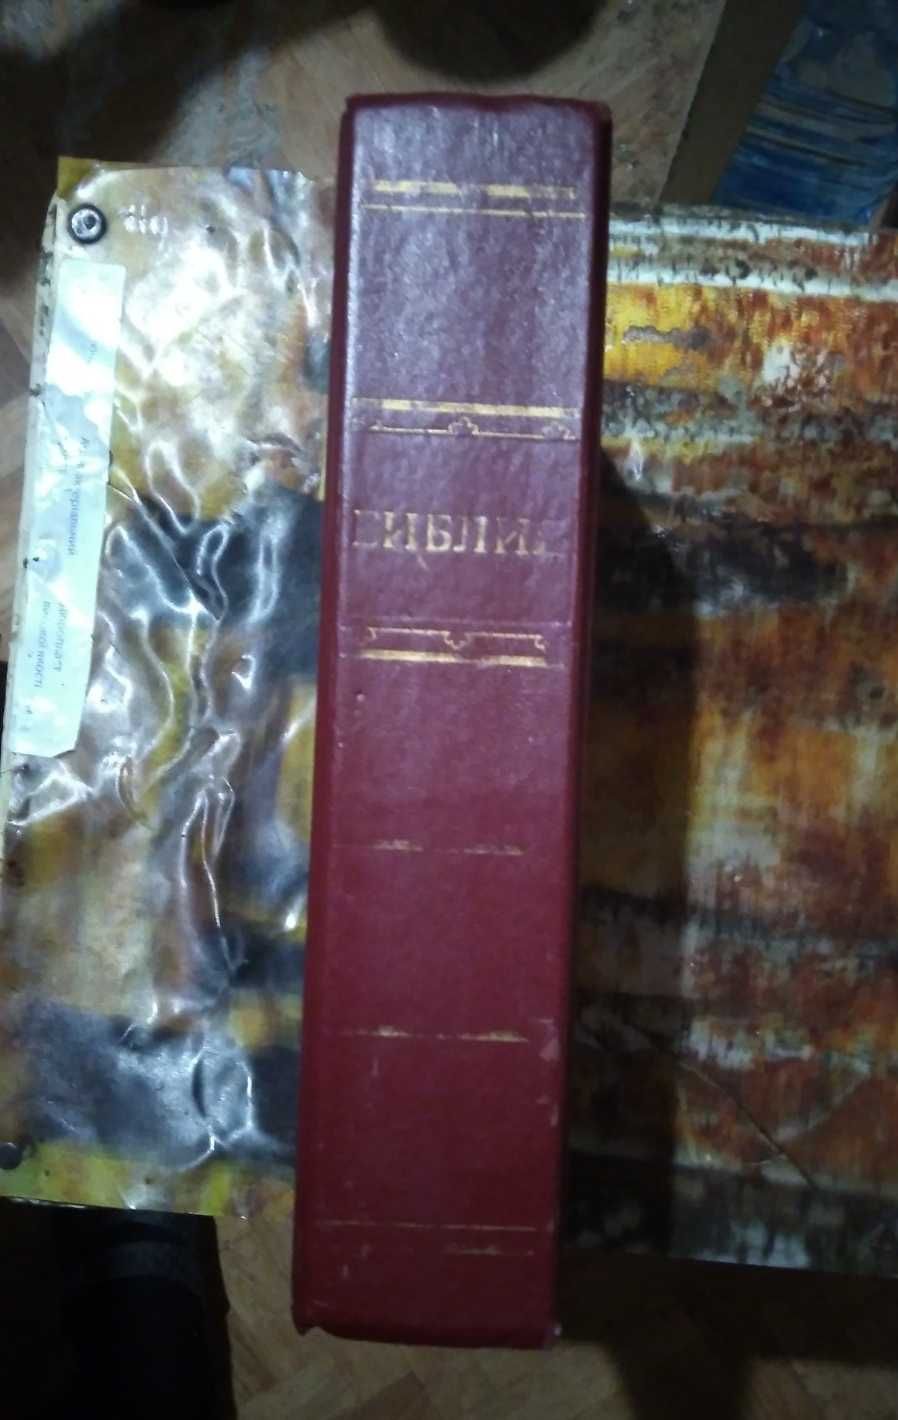 Библия, издание Московской патриархии, 1990 г.